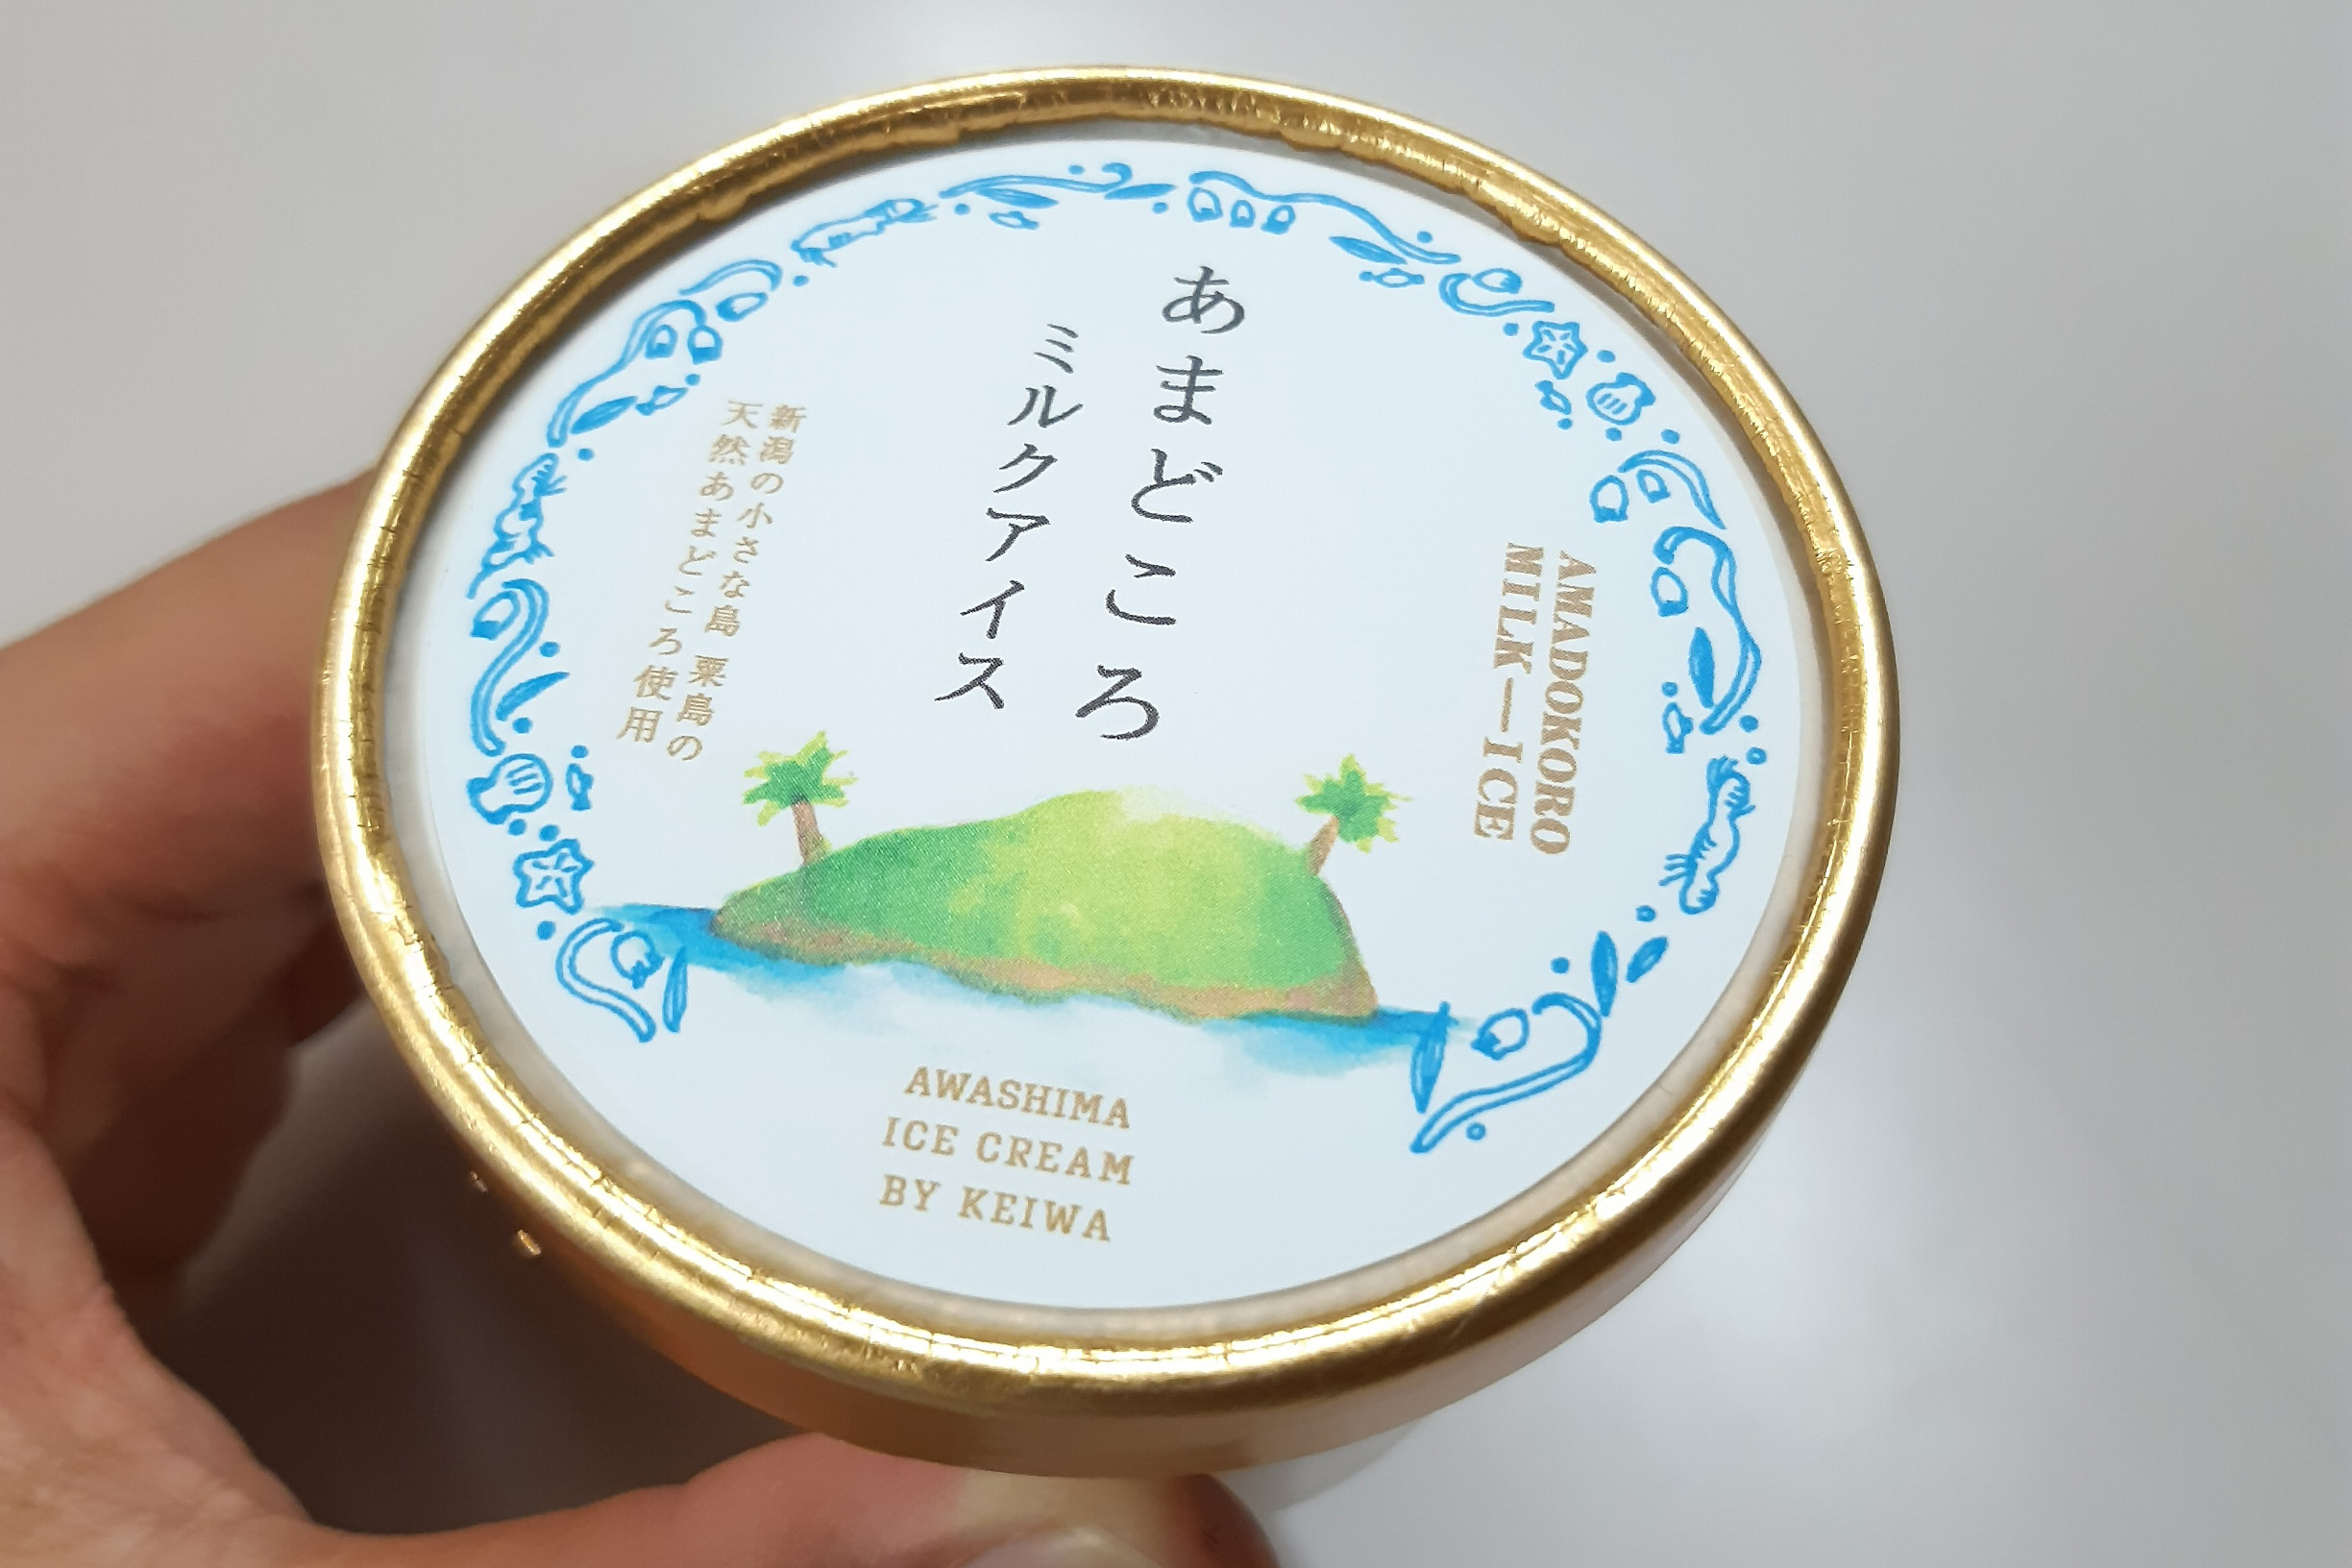 粟島の新たな特産品として「あまどころミルクアイス」を開発しました